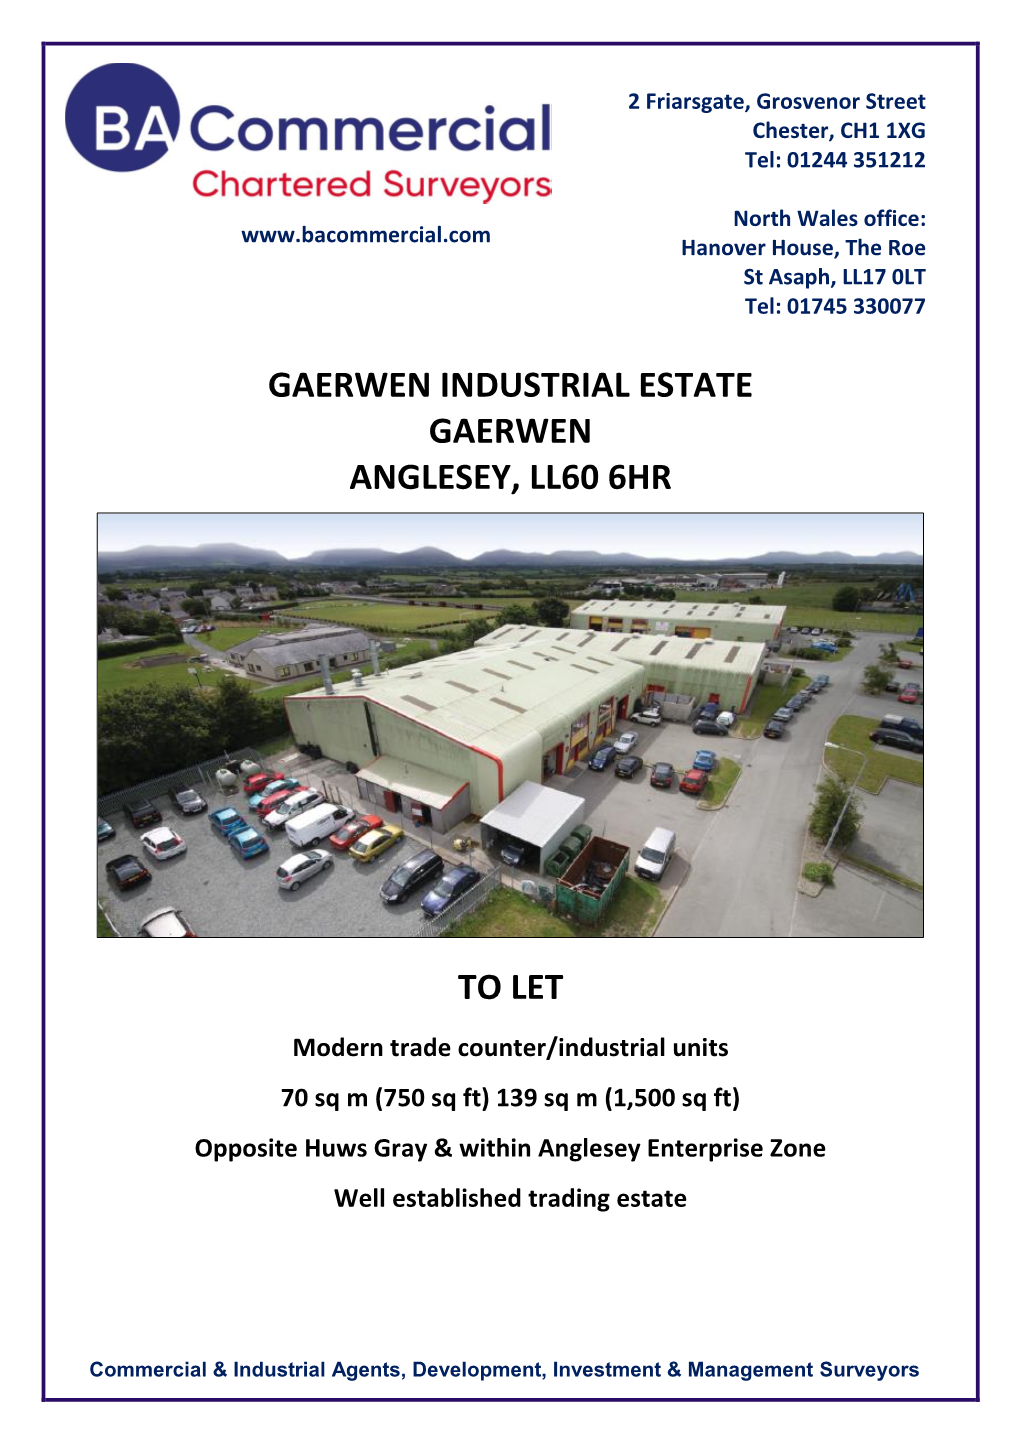 Gaerwen Industrial Estate Gaerwen Anglesey, Ll60 6Hr